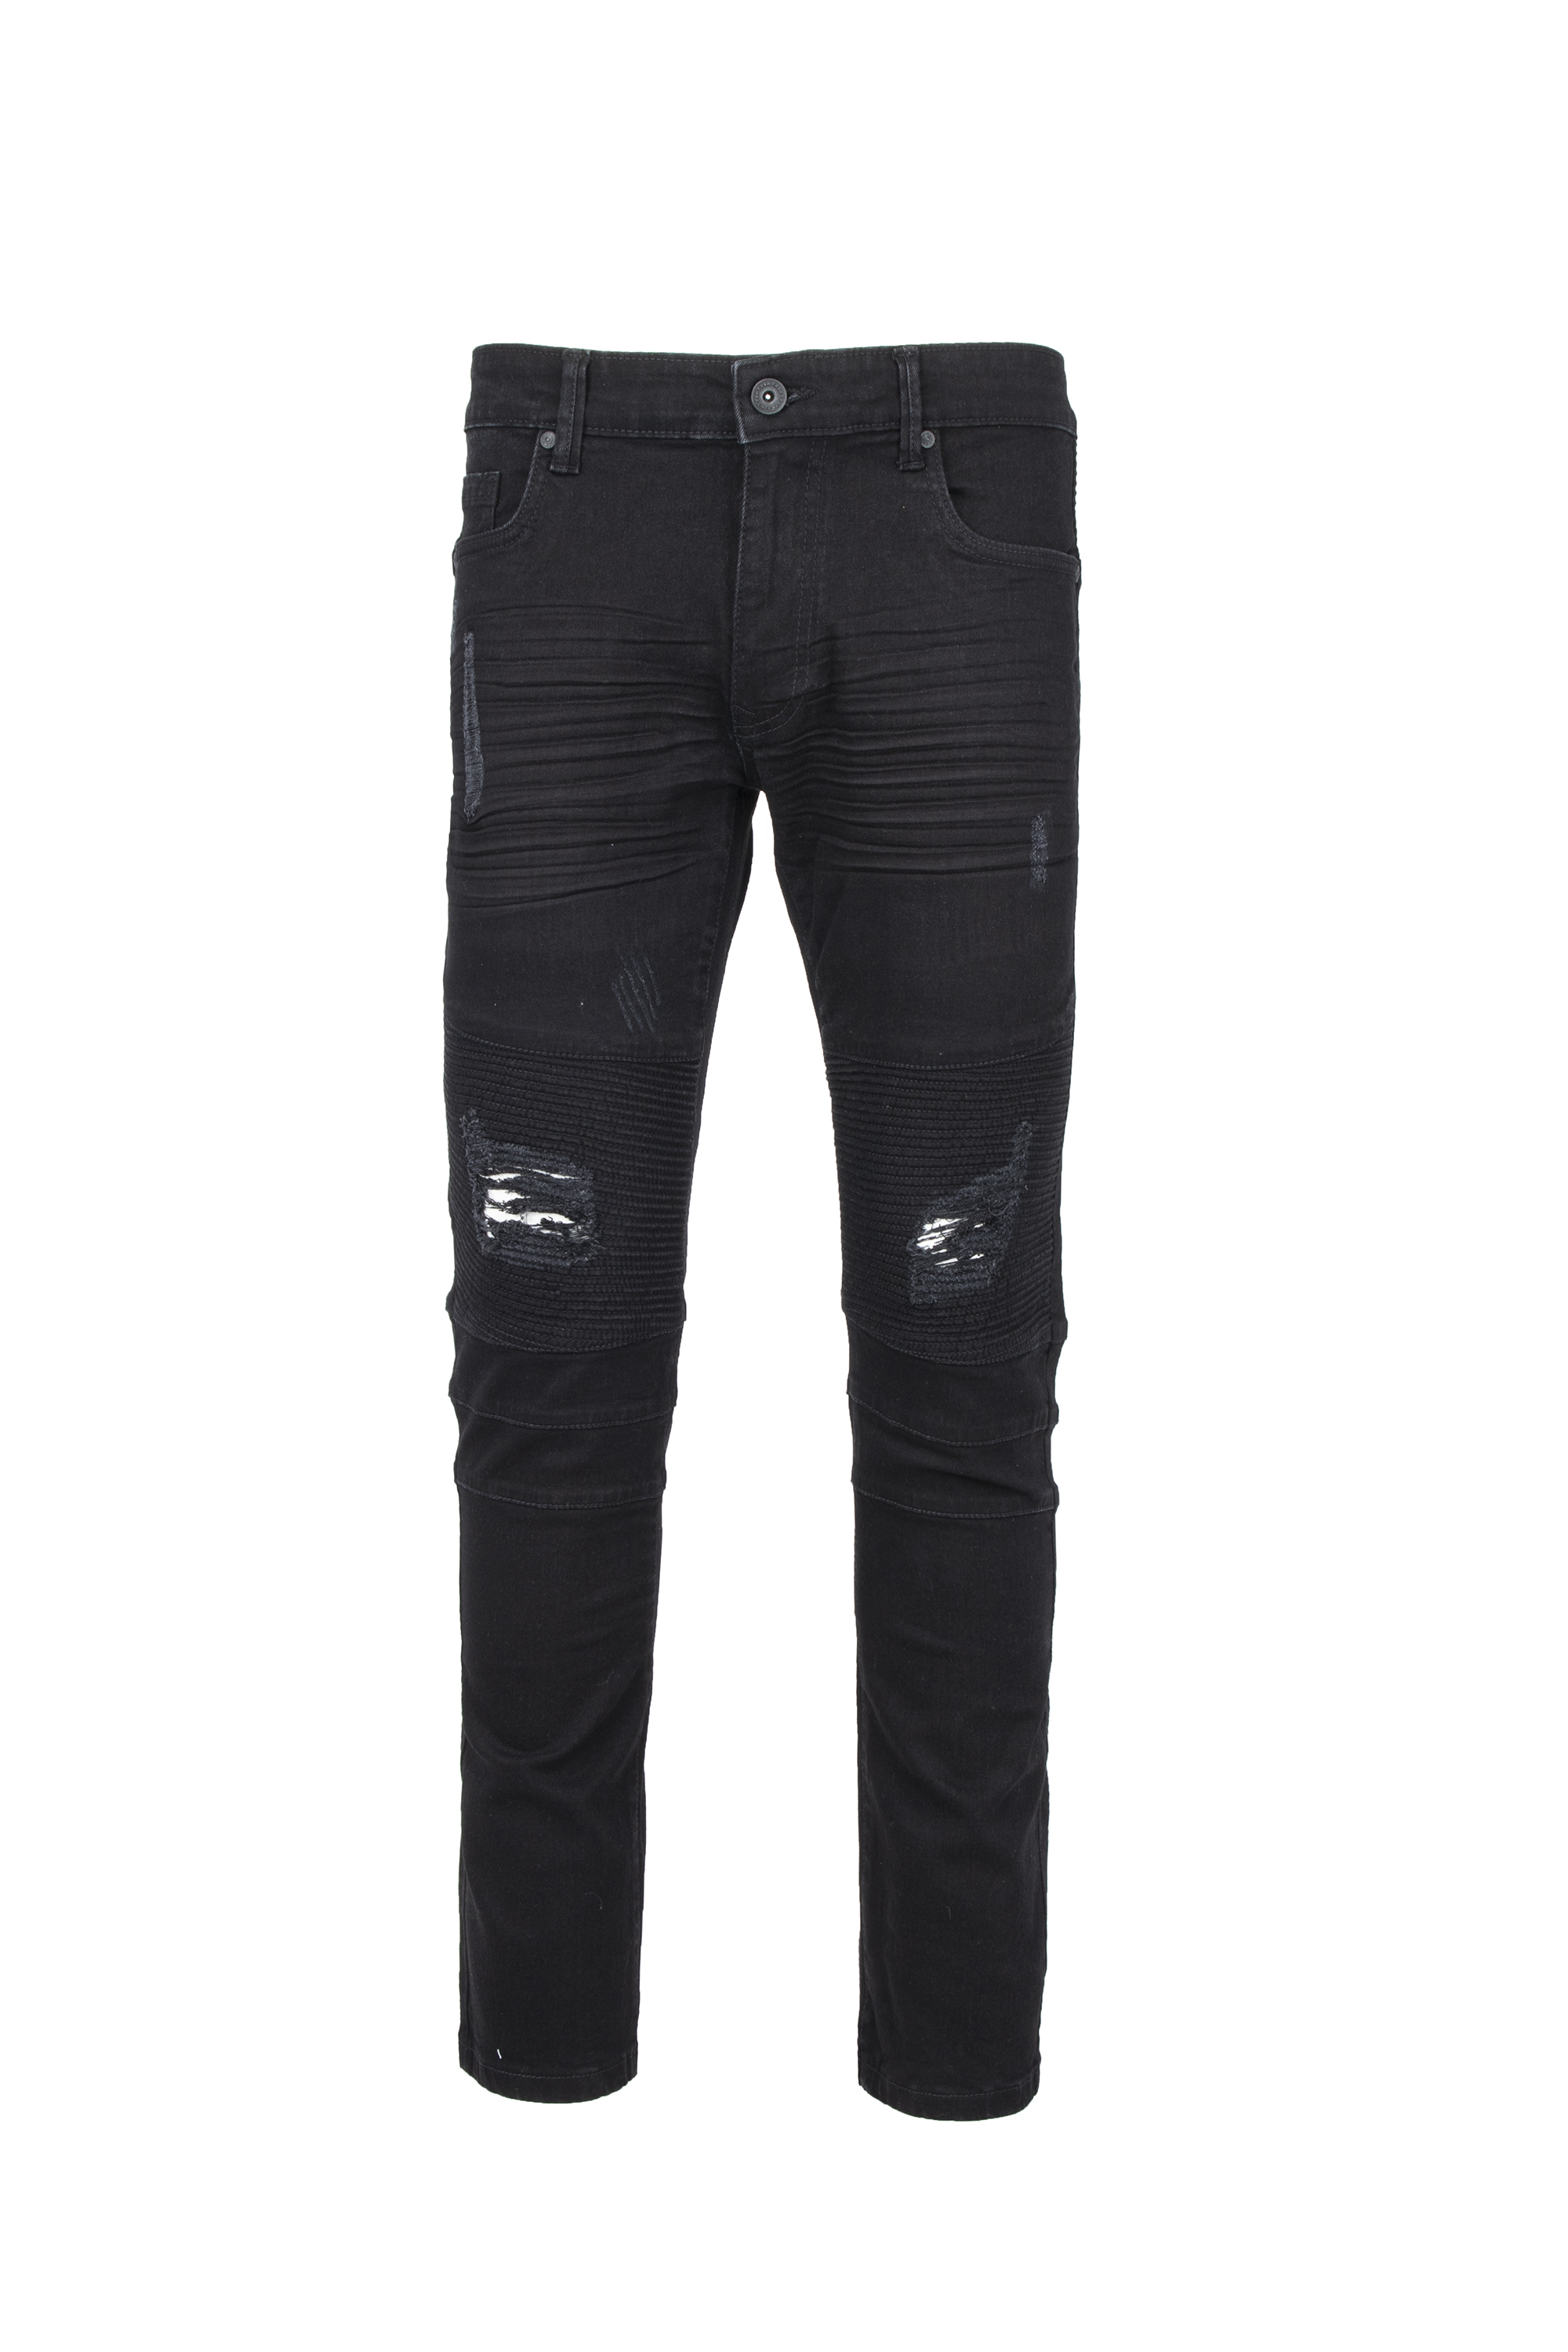 RAW X Men's Slim Fit Skinny Biker Jean, Comfy Flex Stretch Moto Wash Rip Distressed Denim Jeans Pants - image 3 of 8